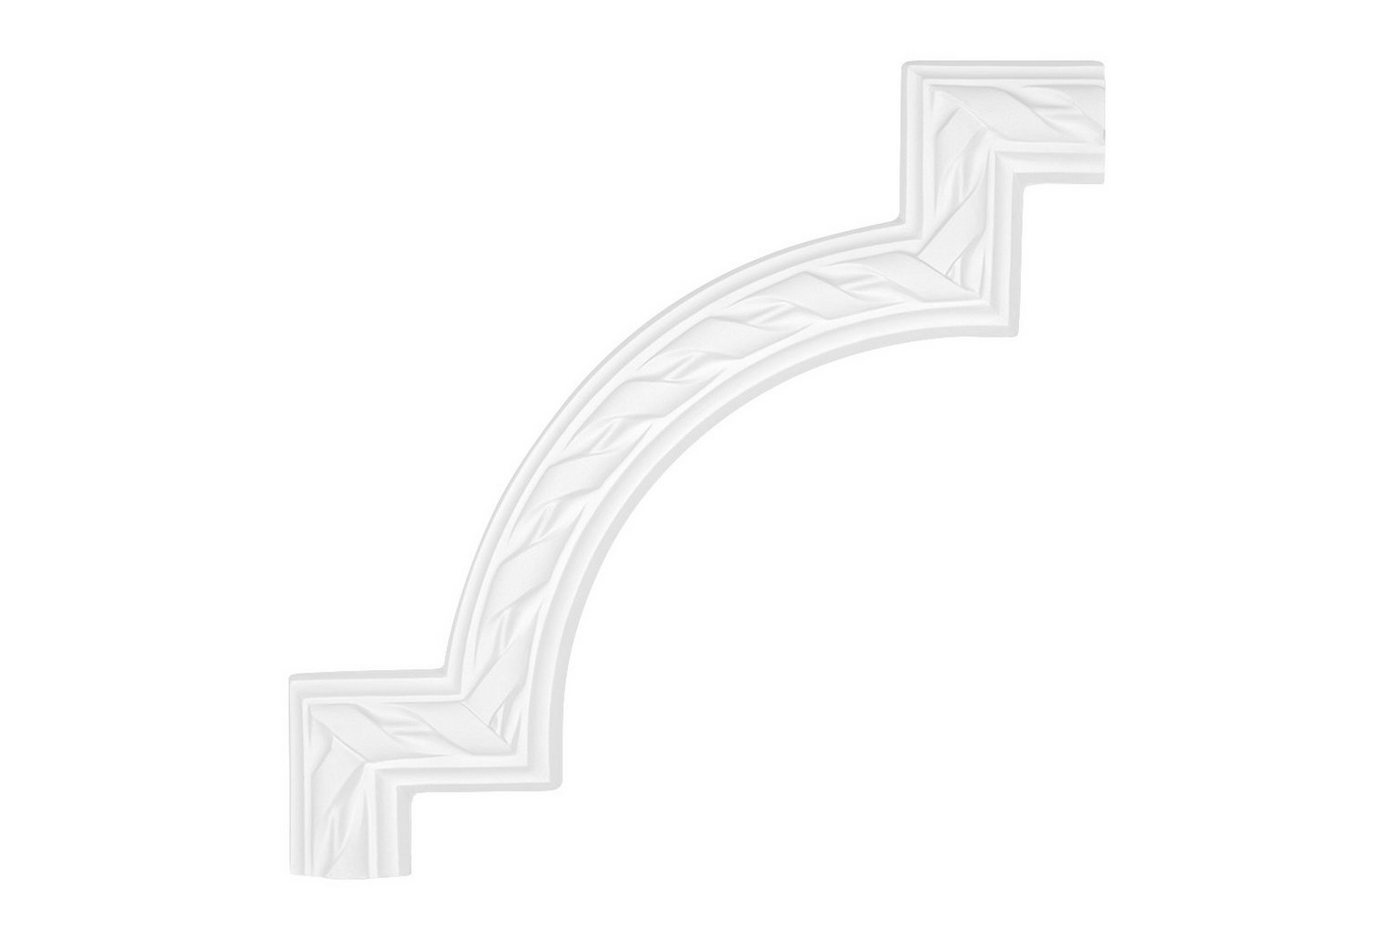 Hexim Perfect Stuckleiste AC204-12, Wand- und Deckenumrandung aus PU - Segment als Ergänzung zur Flachleiste, hart & stoßfest, weiß - Spiegelrahmen von Hexim Perfect